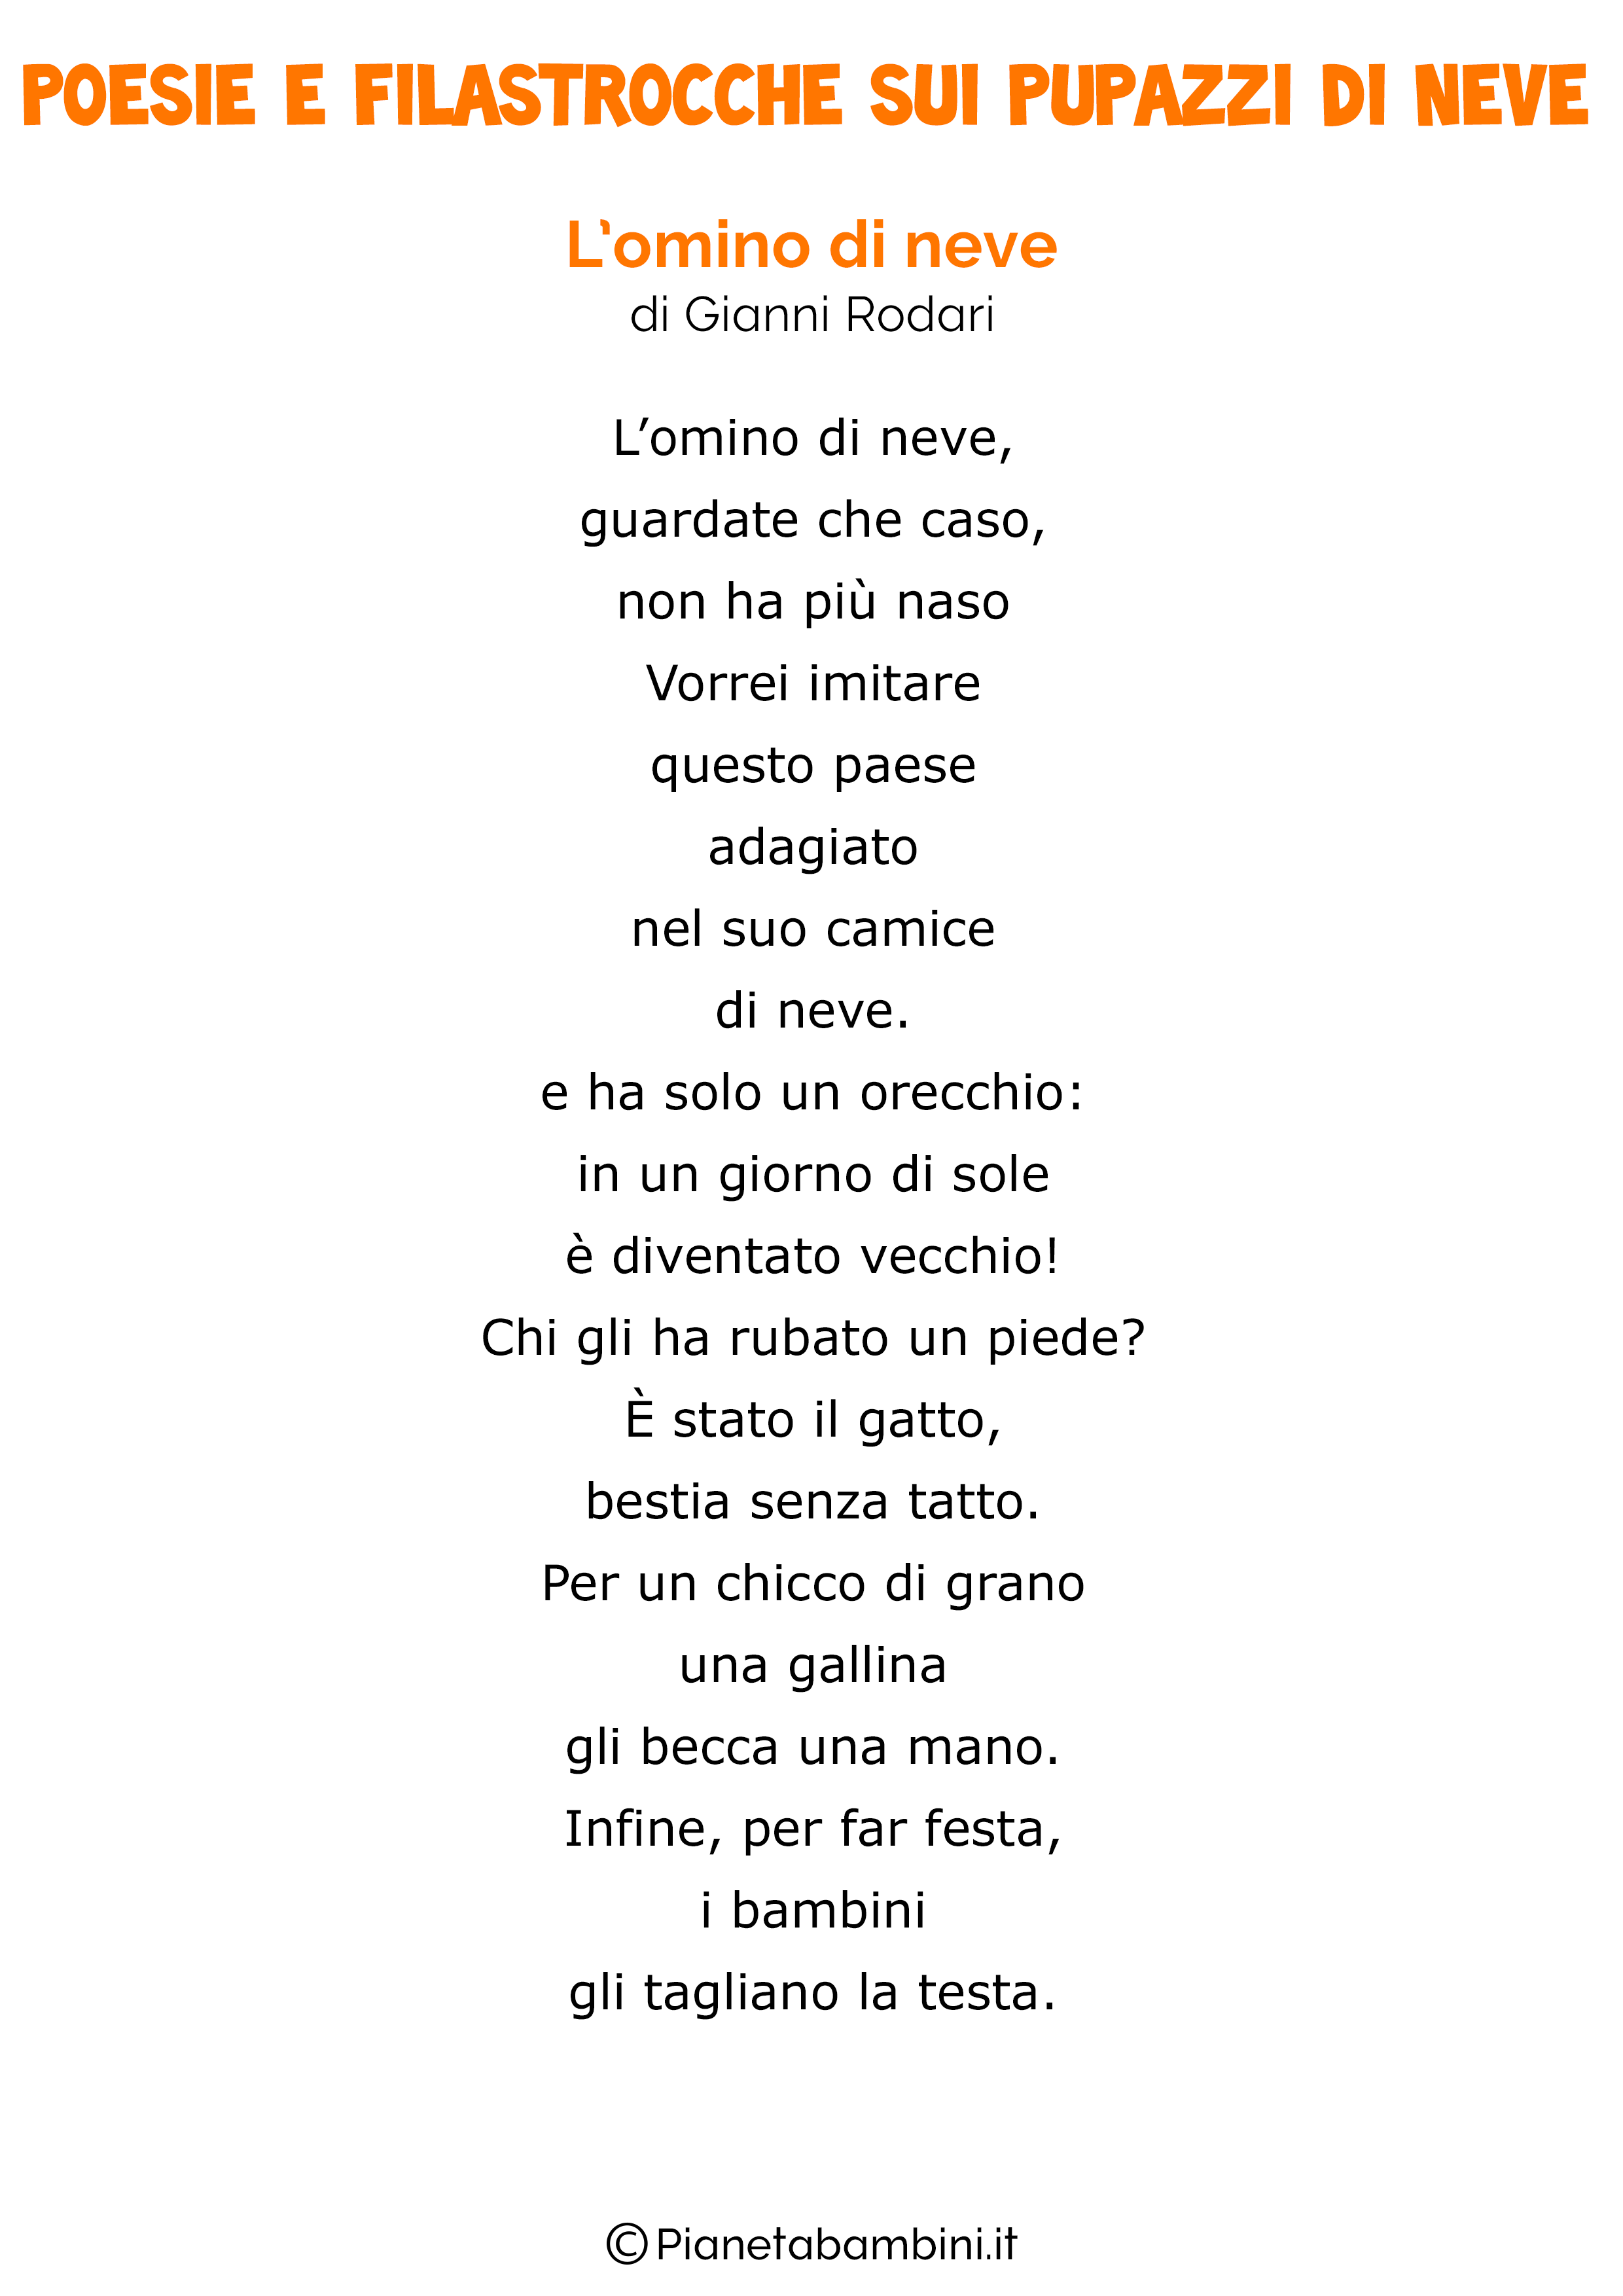 Poesie Di Natale Gianni Rodari.9 Poesie E Filastrocche Sui Pupazzi Di Neve Per Bambini Pianetabambini It